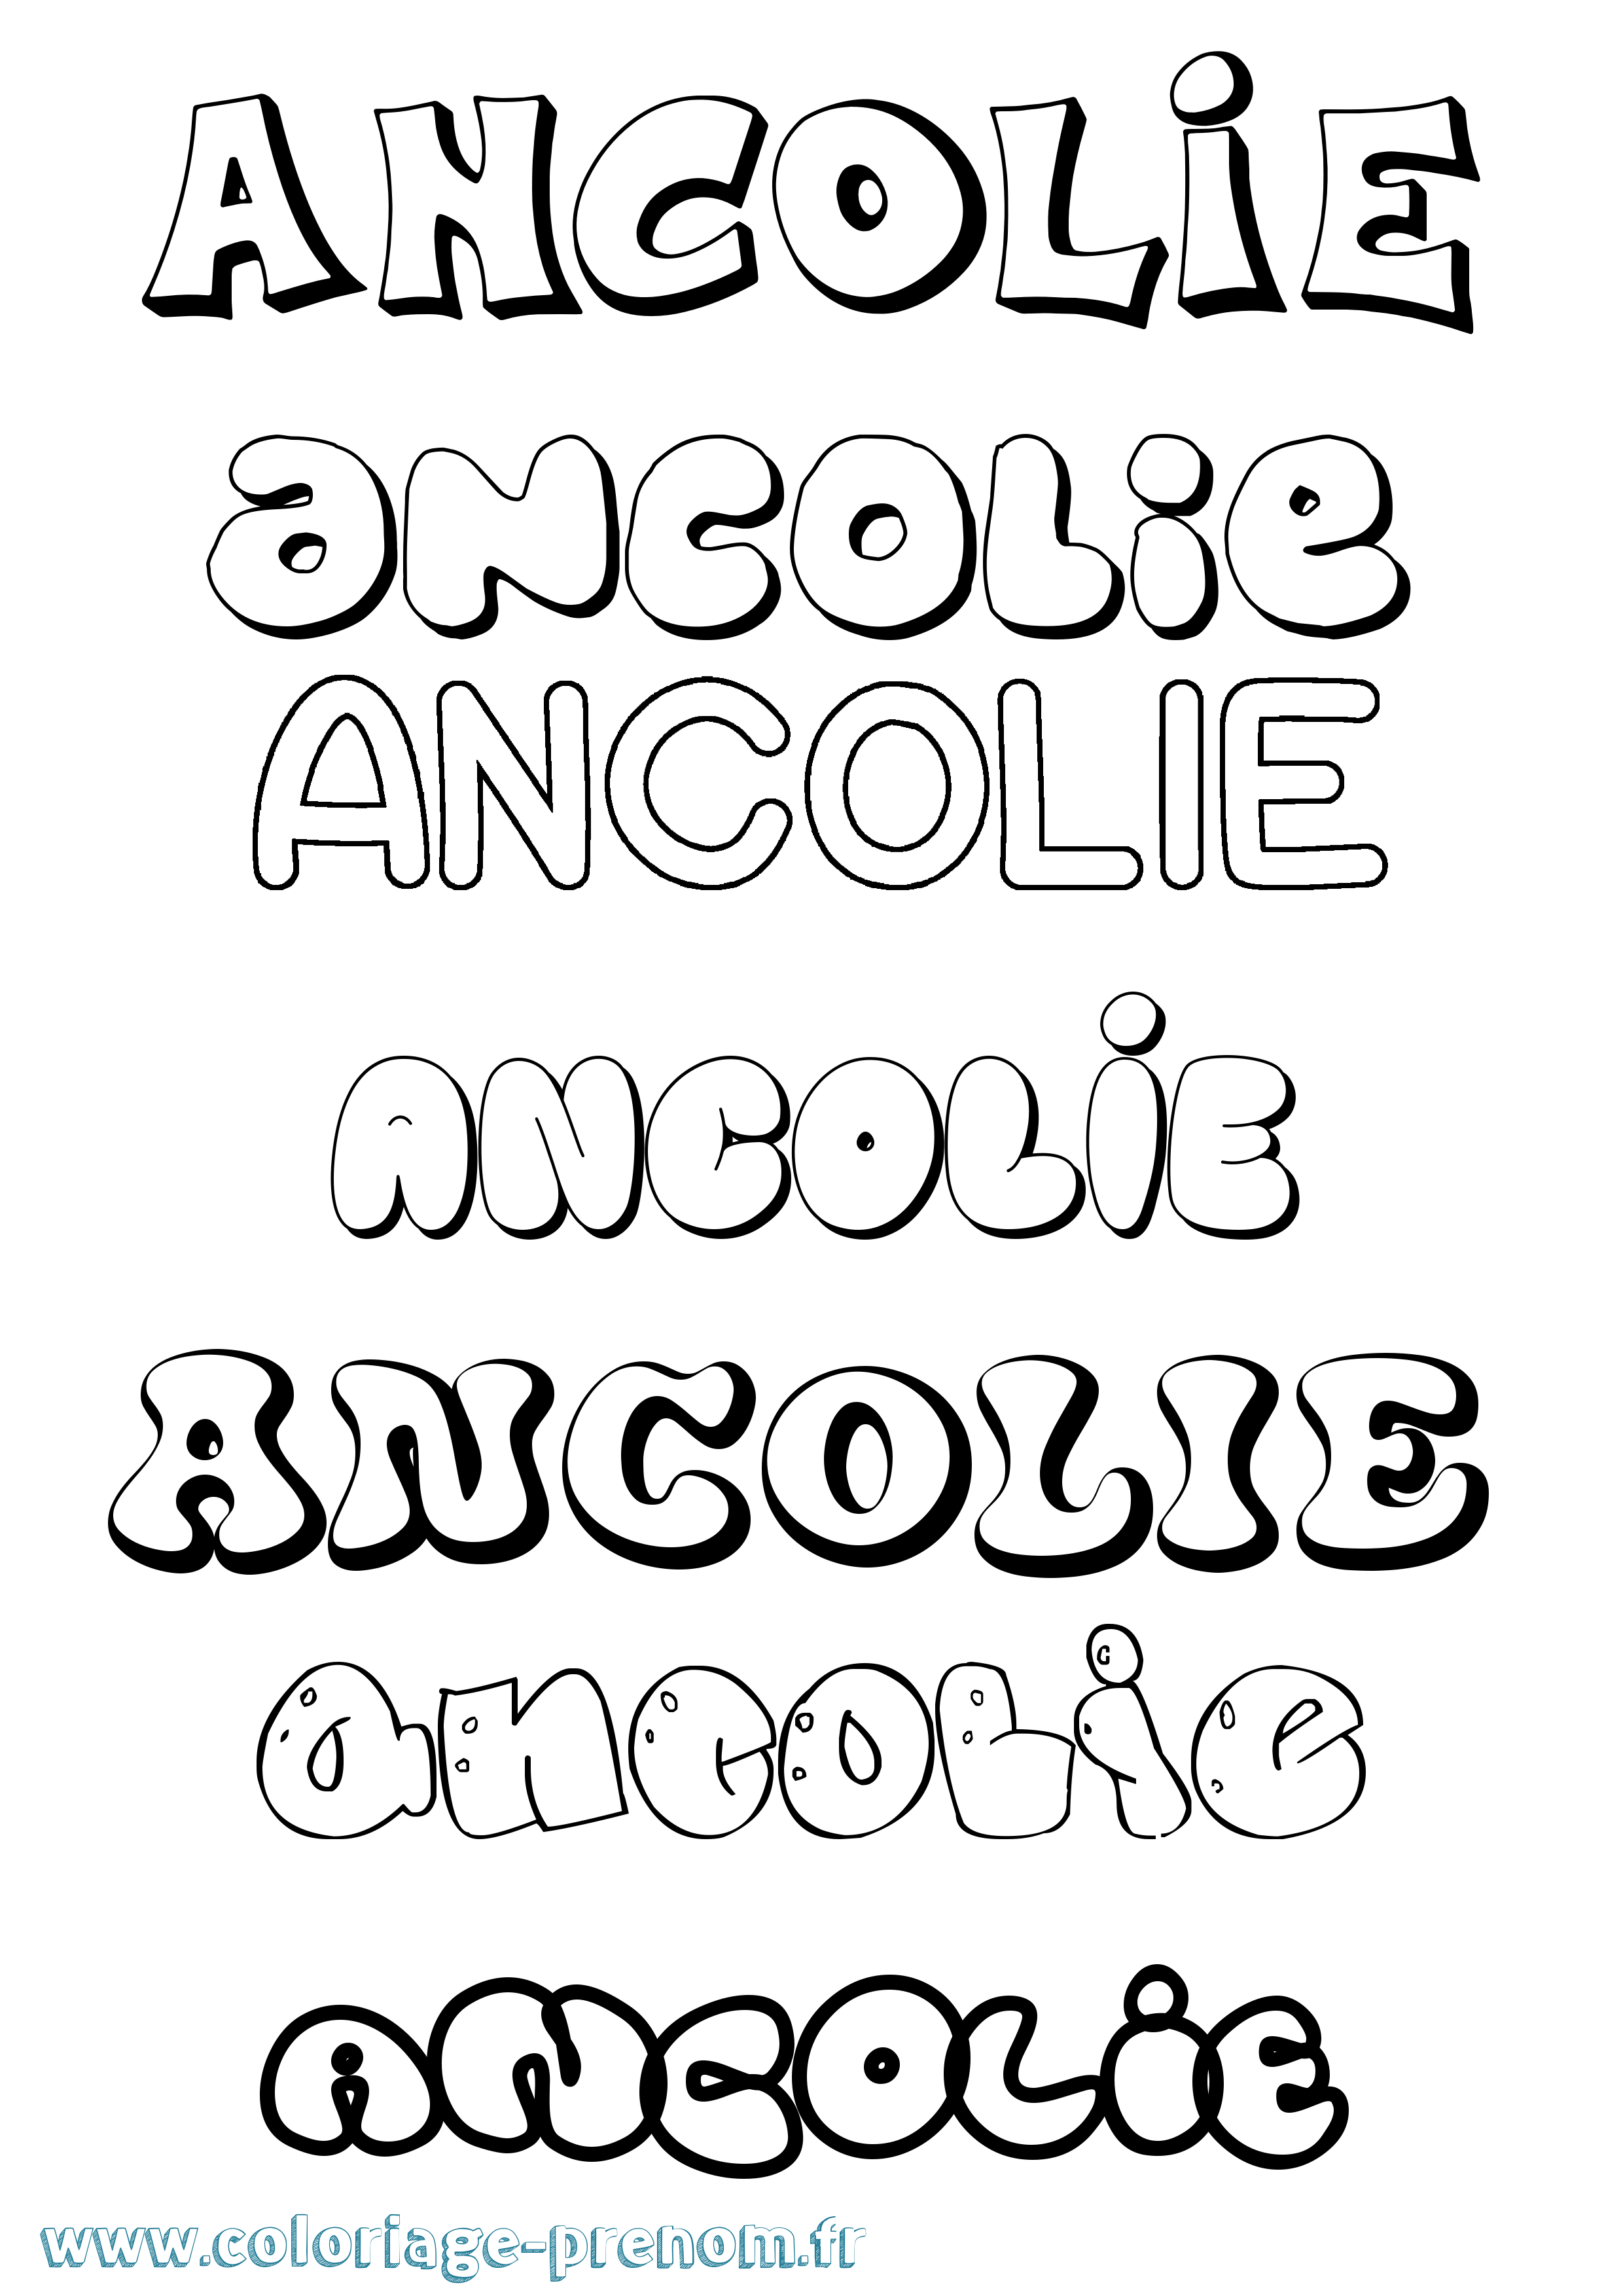 Coloriage prénom Ancolie Bubble